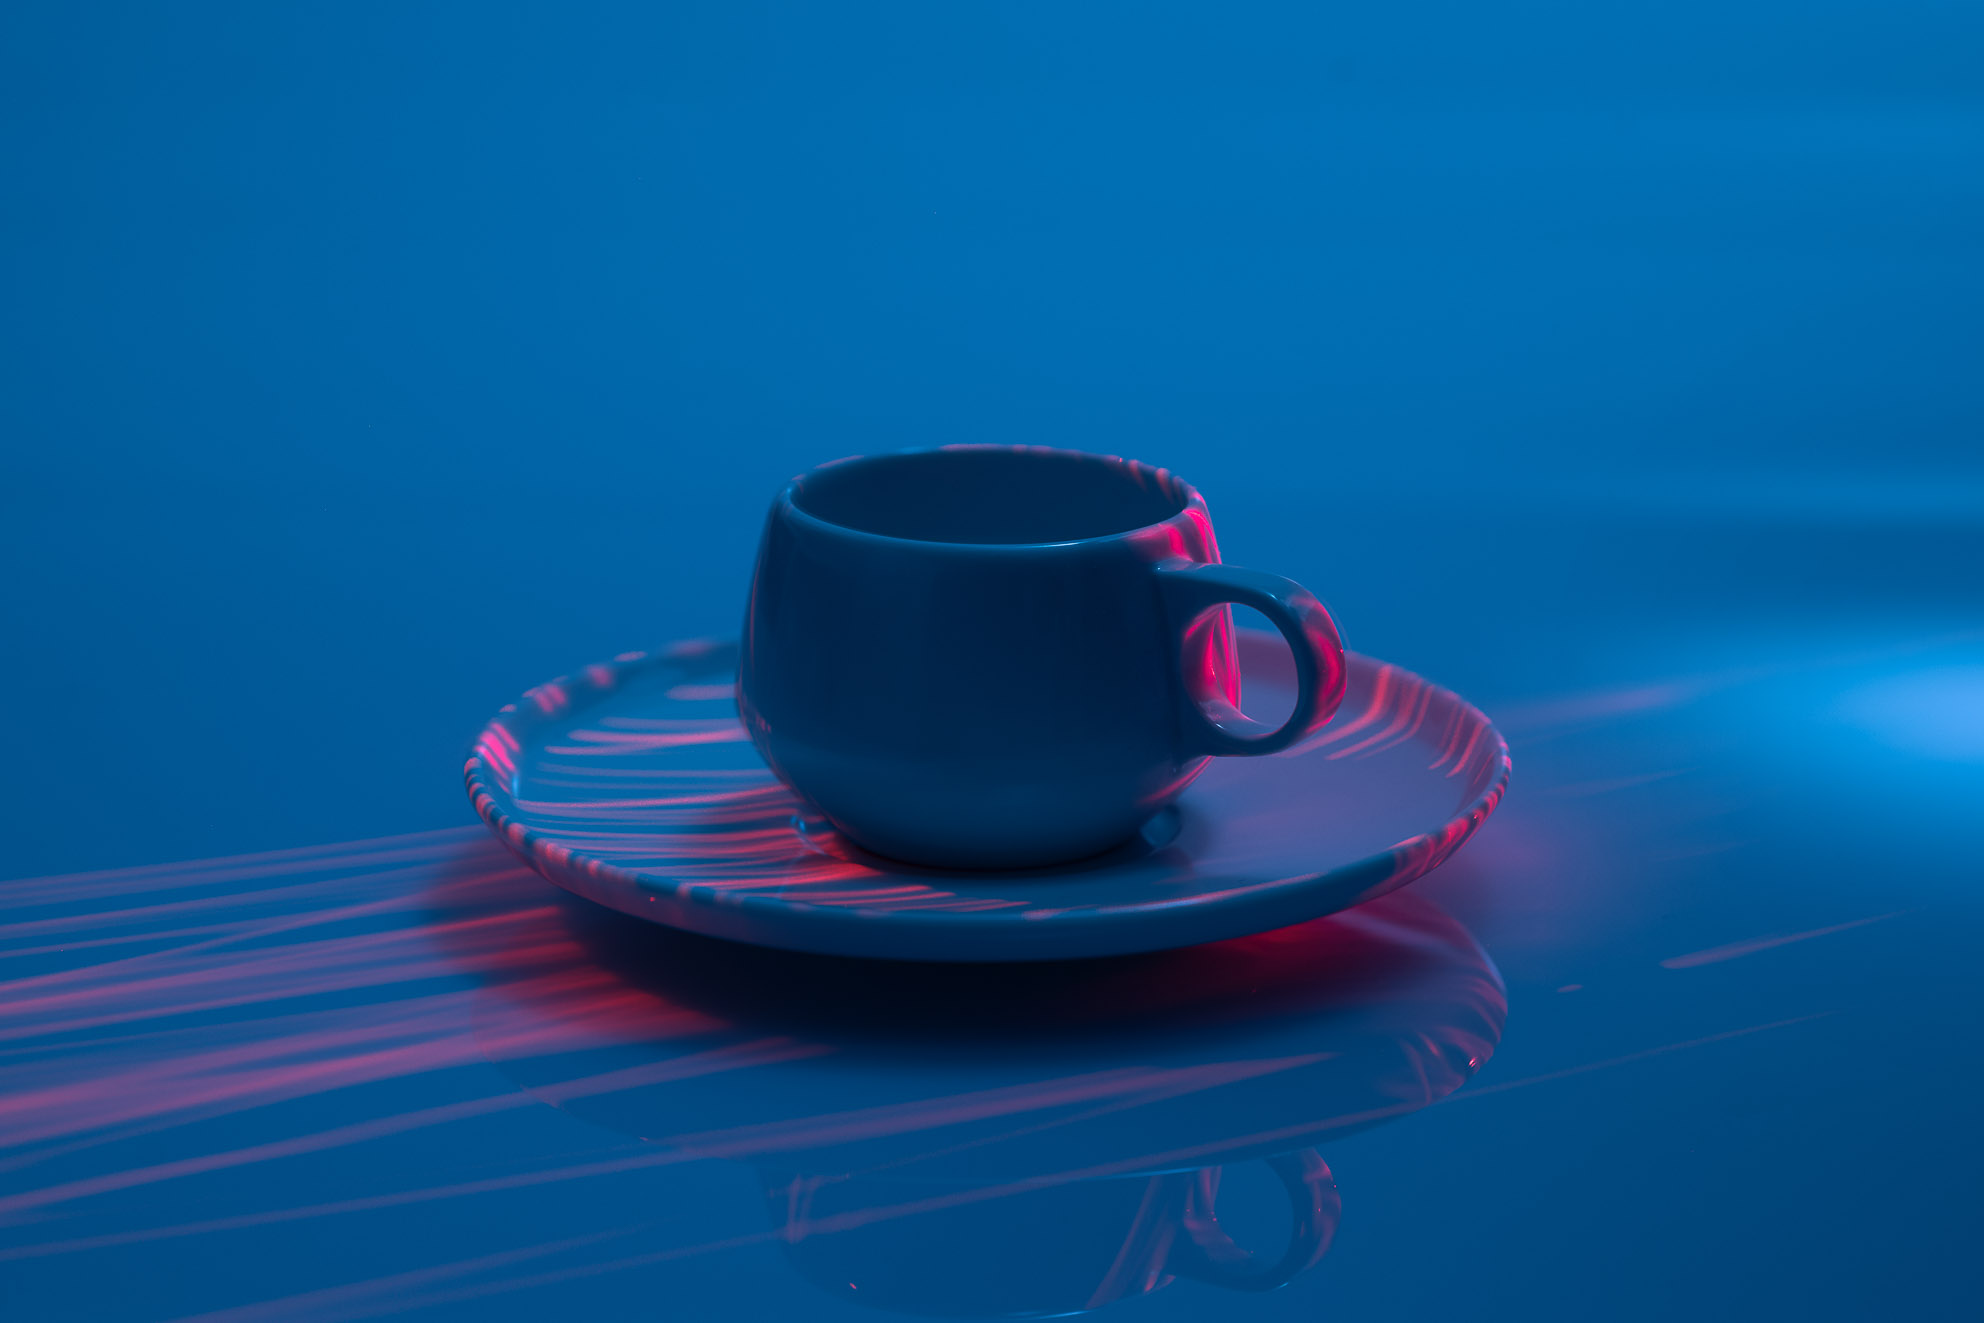 Espressotasse mit blauen und lila farbenden Licht -Produktfoto mit Laser fotografiert